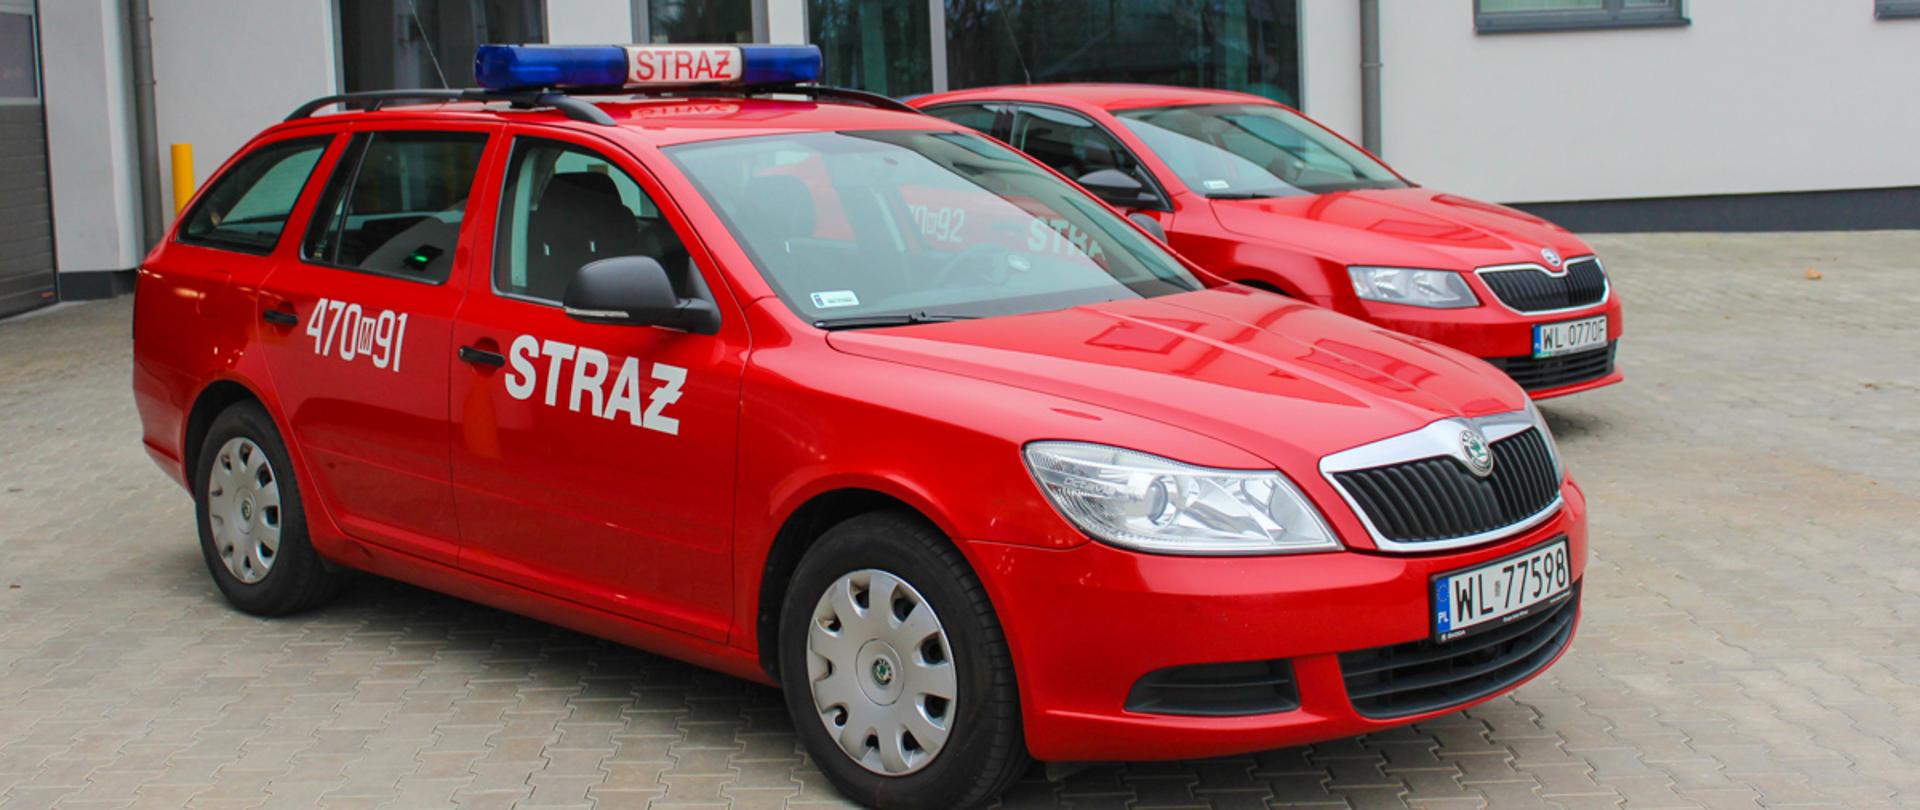 Samochód operacyjny Skoda Octavia Combi - KP PSP w Legionowie. Kolor czerwony na boku biały napis straż oraz numer operacyjny 470 M 91